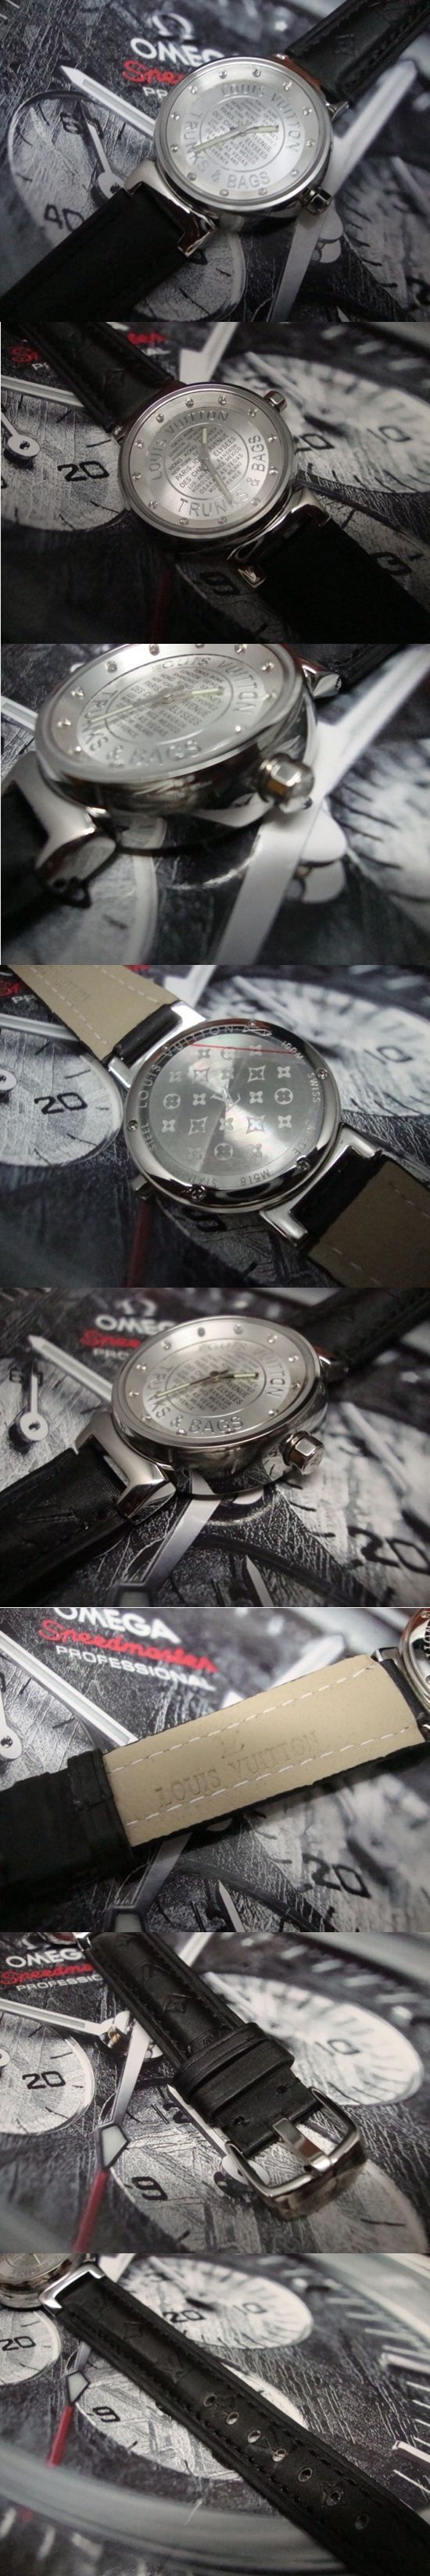 おしゃれなブランド時計がLOUIS-VUITTON-ルイヴィトン腕時計 ルイヴィトン 男/女性用腕時計 LOUIS-VUITTON-N-002Aを提供します.